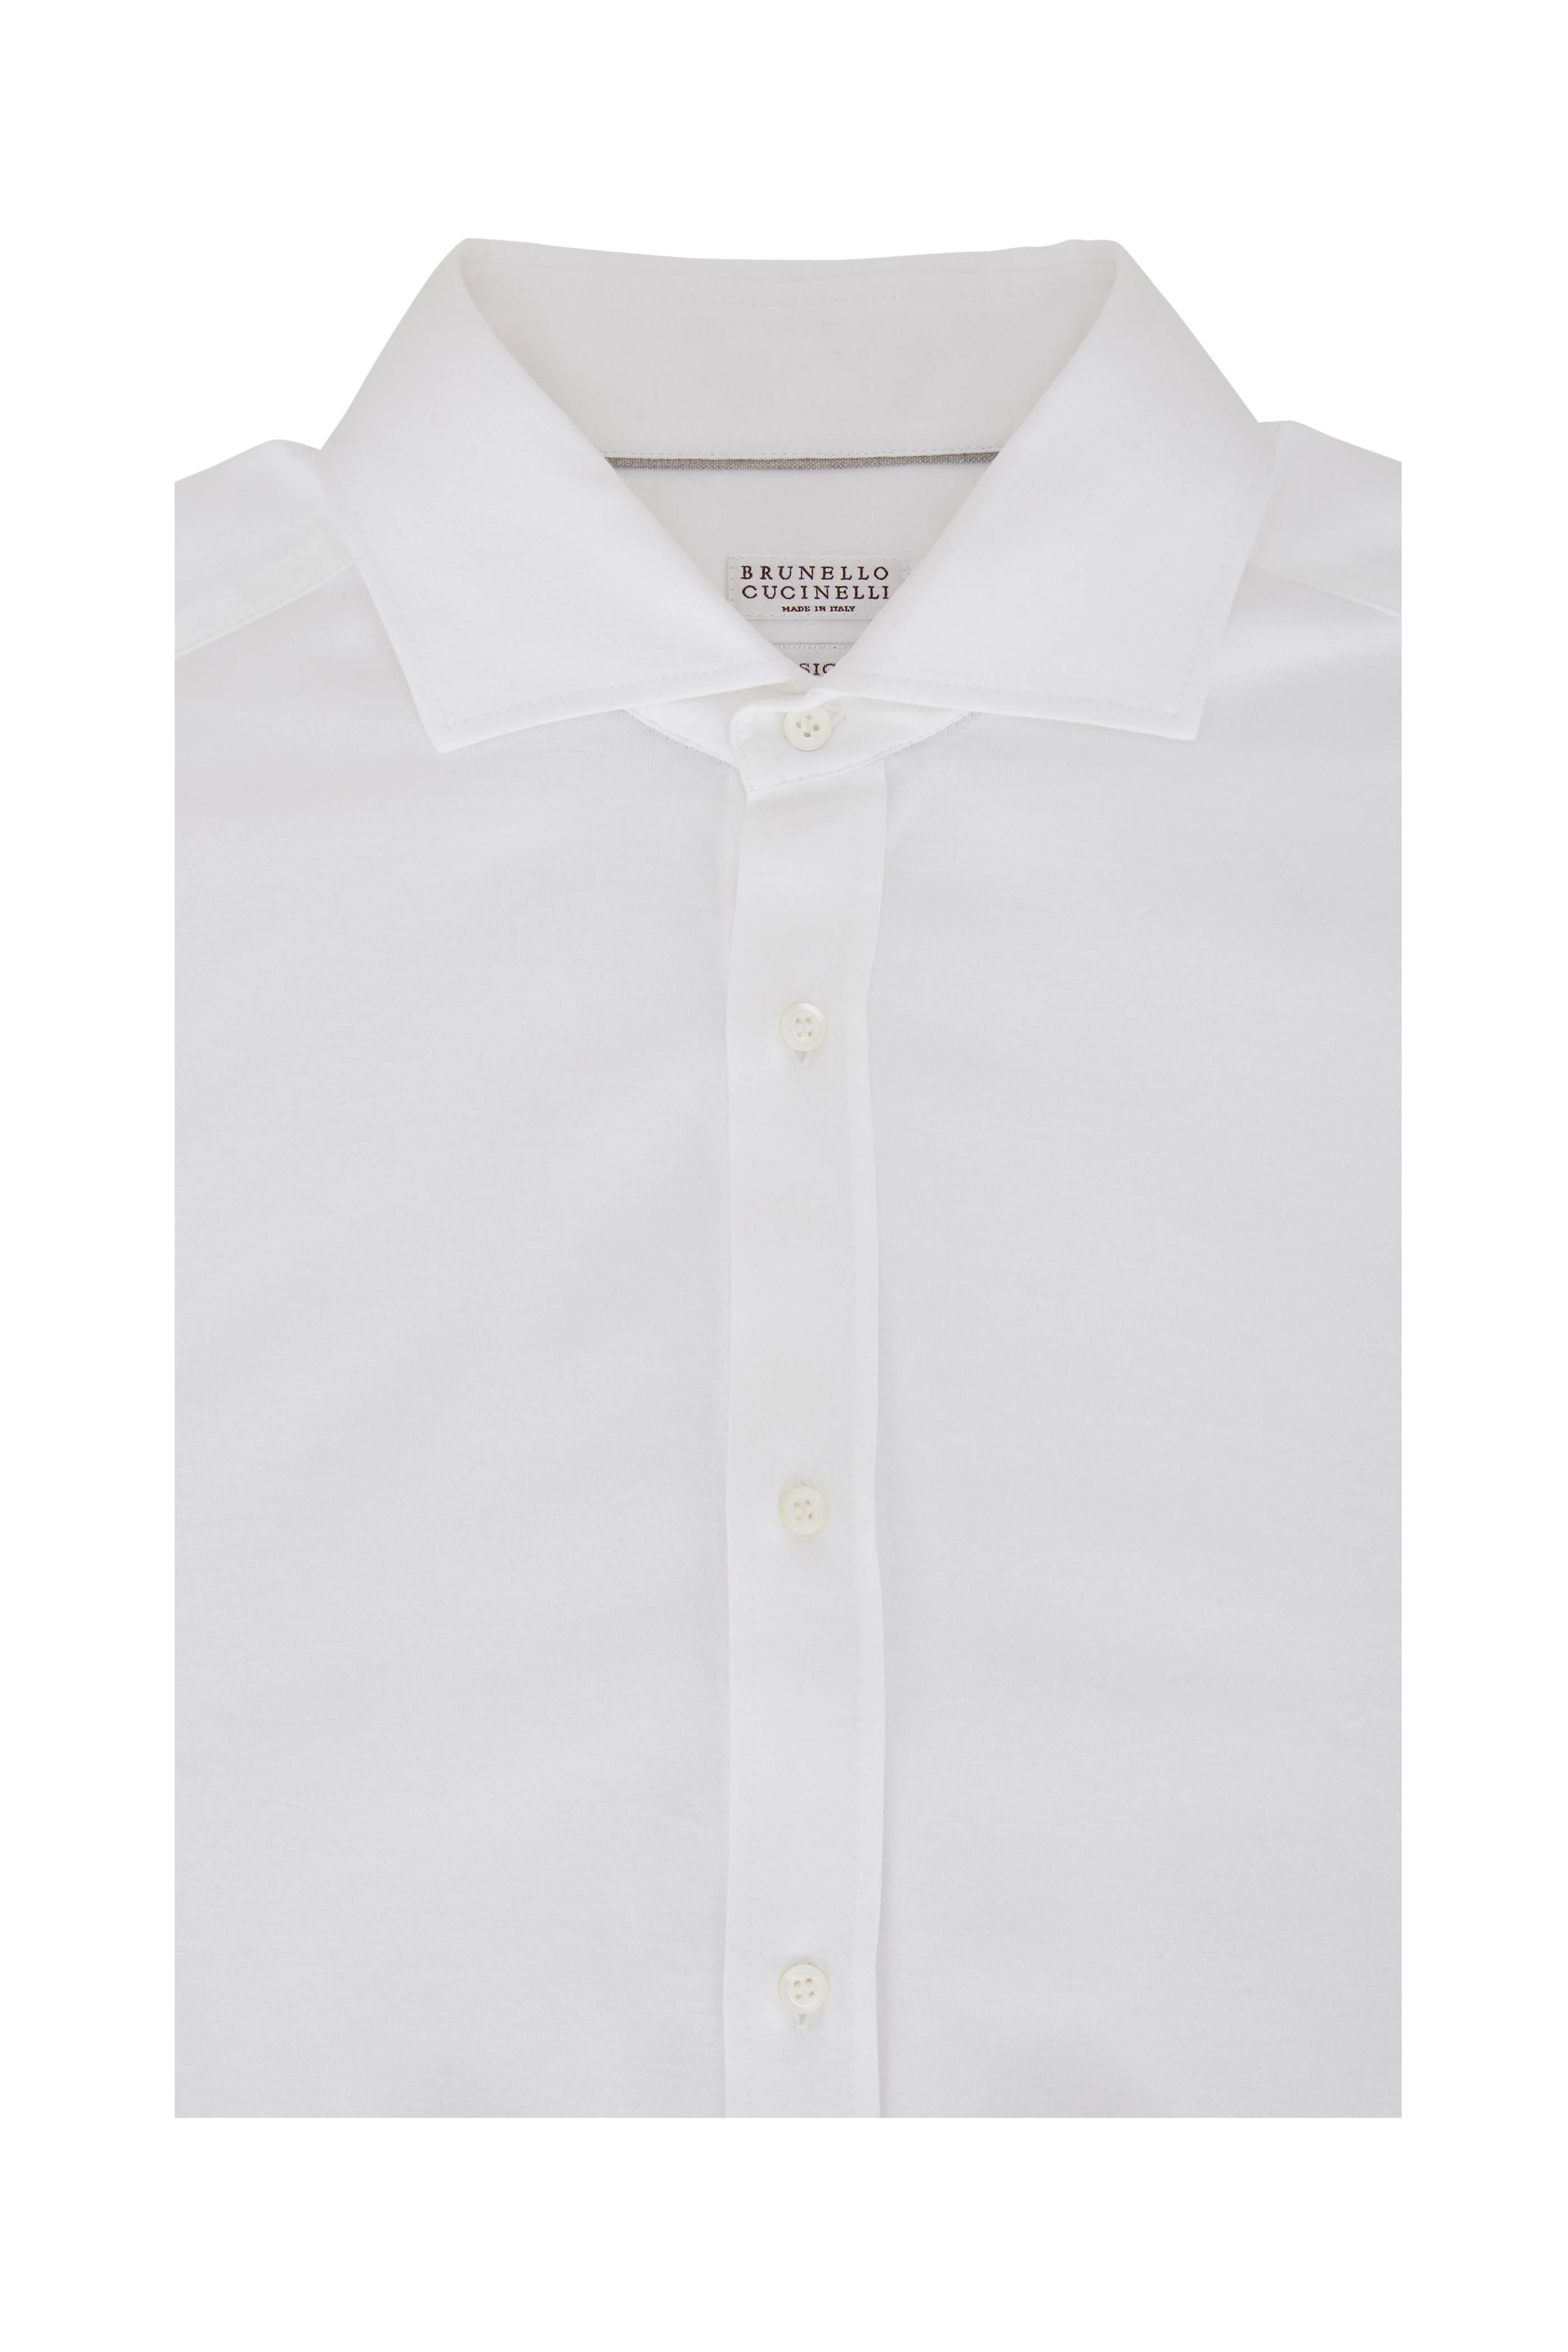 Brunello Cucinelli long-sleeves linen shirt - Neutrals